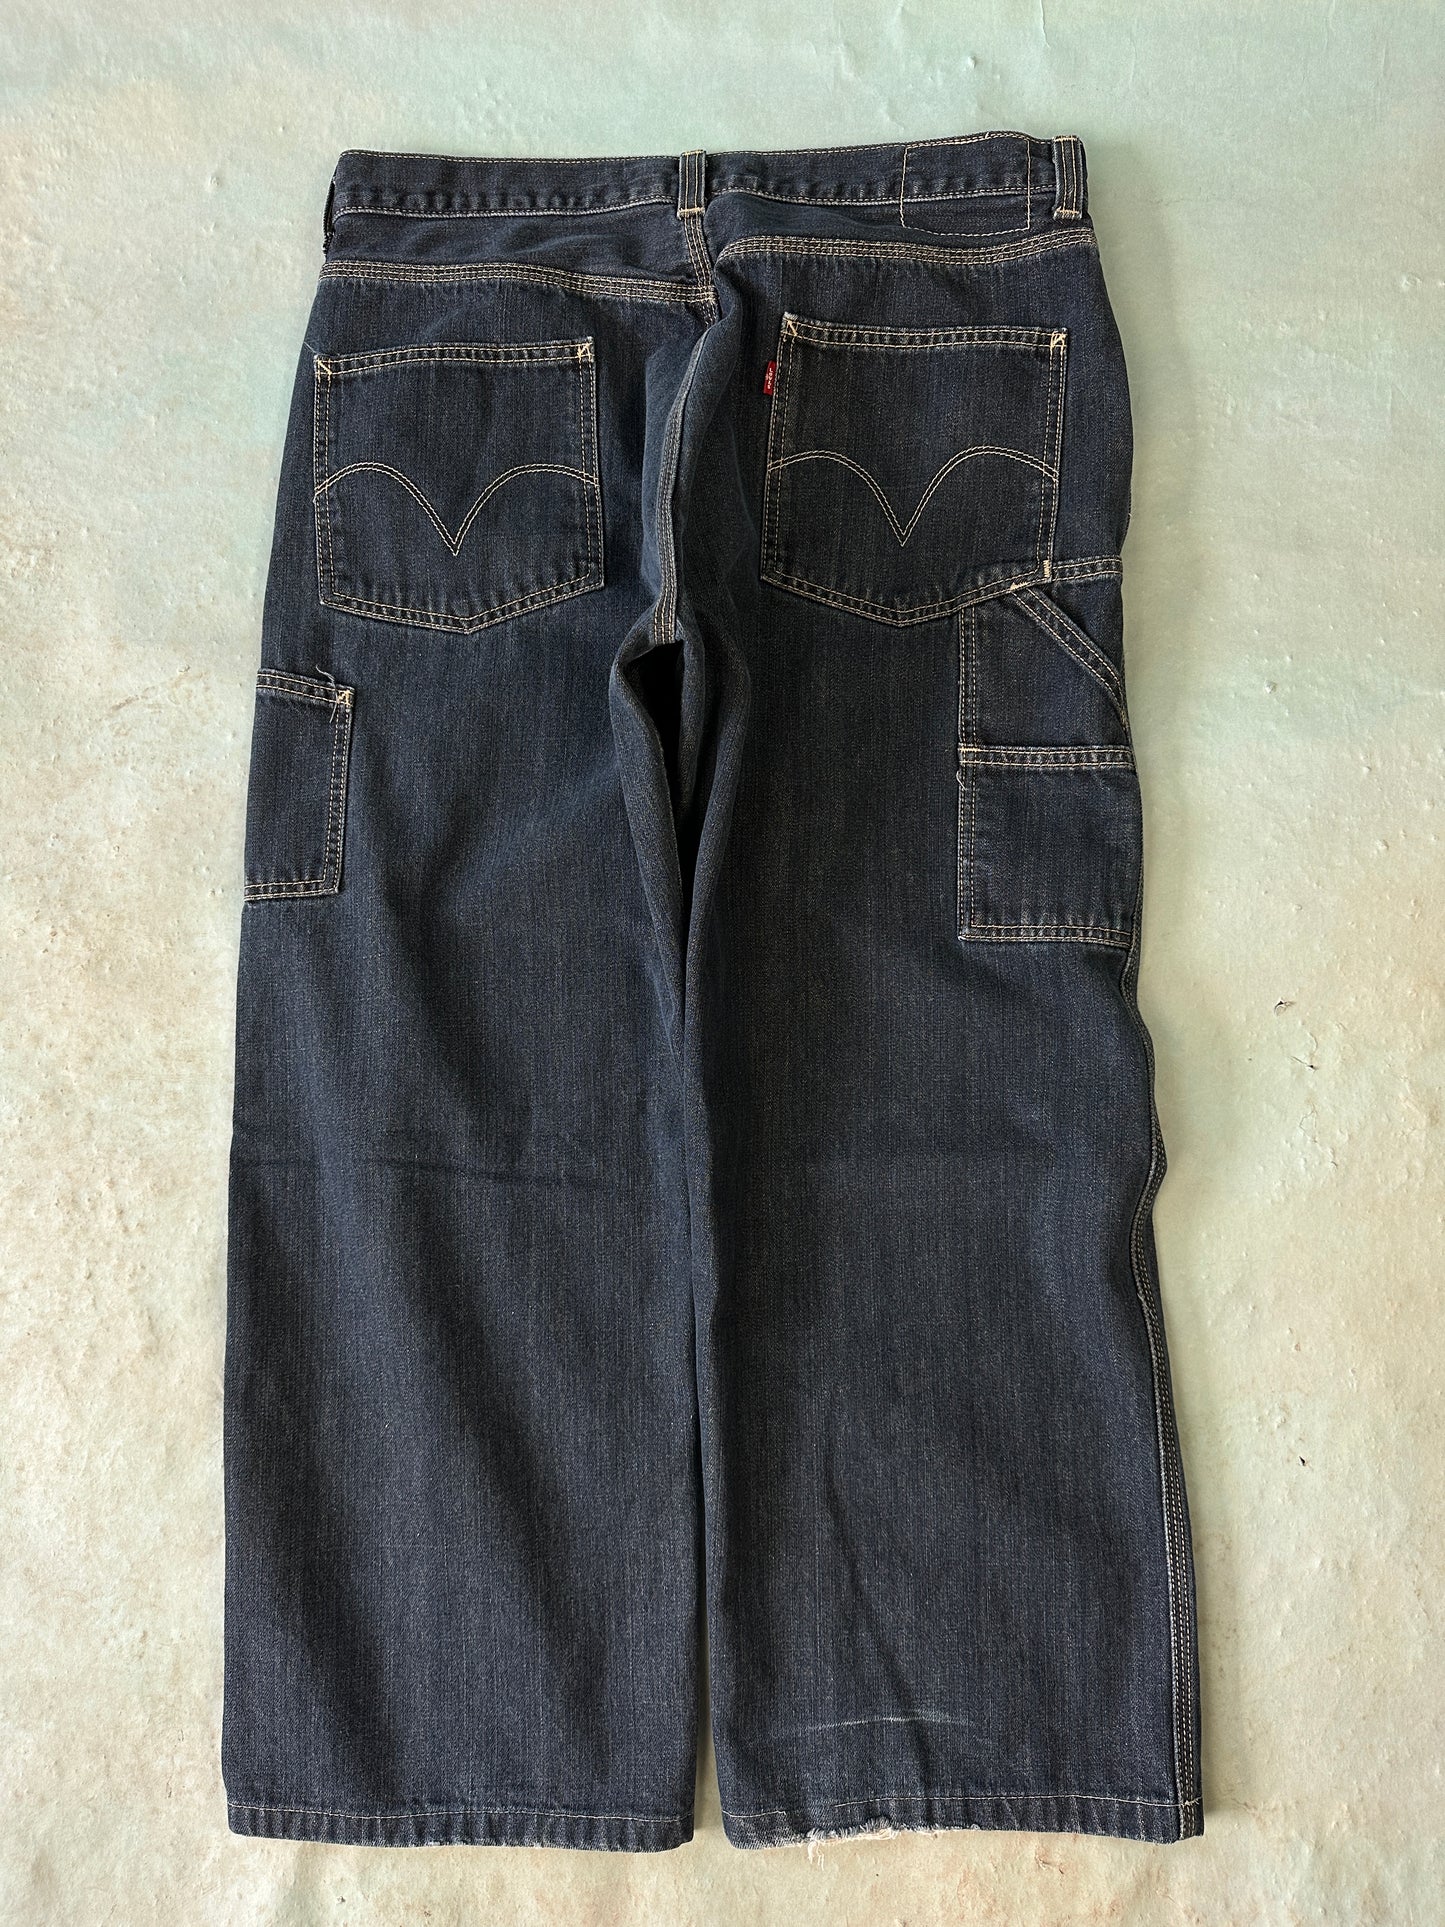 Levis Carpenter Vintage Jeans - 36 x 32